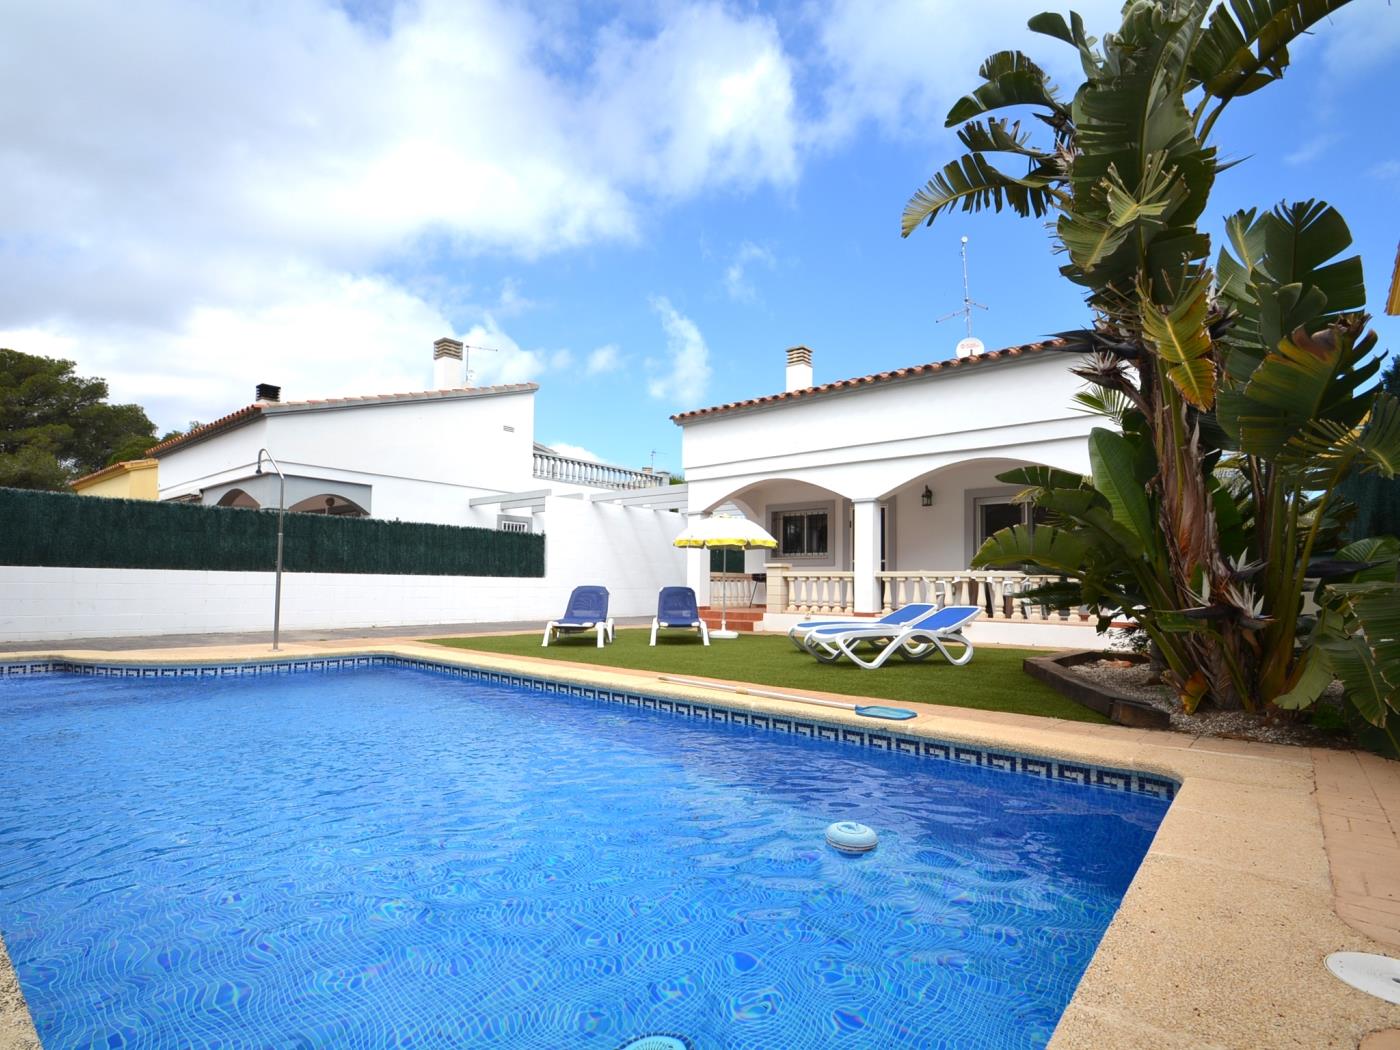 Casa Emma with the private pool in Riumar Deltebre